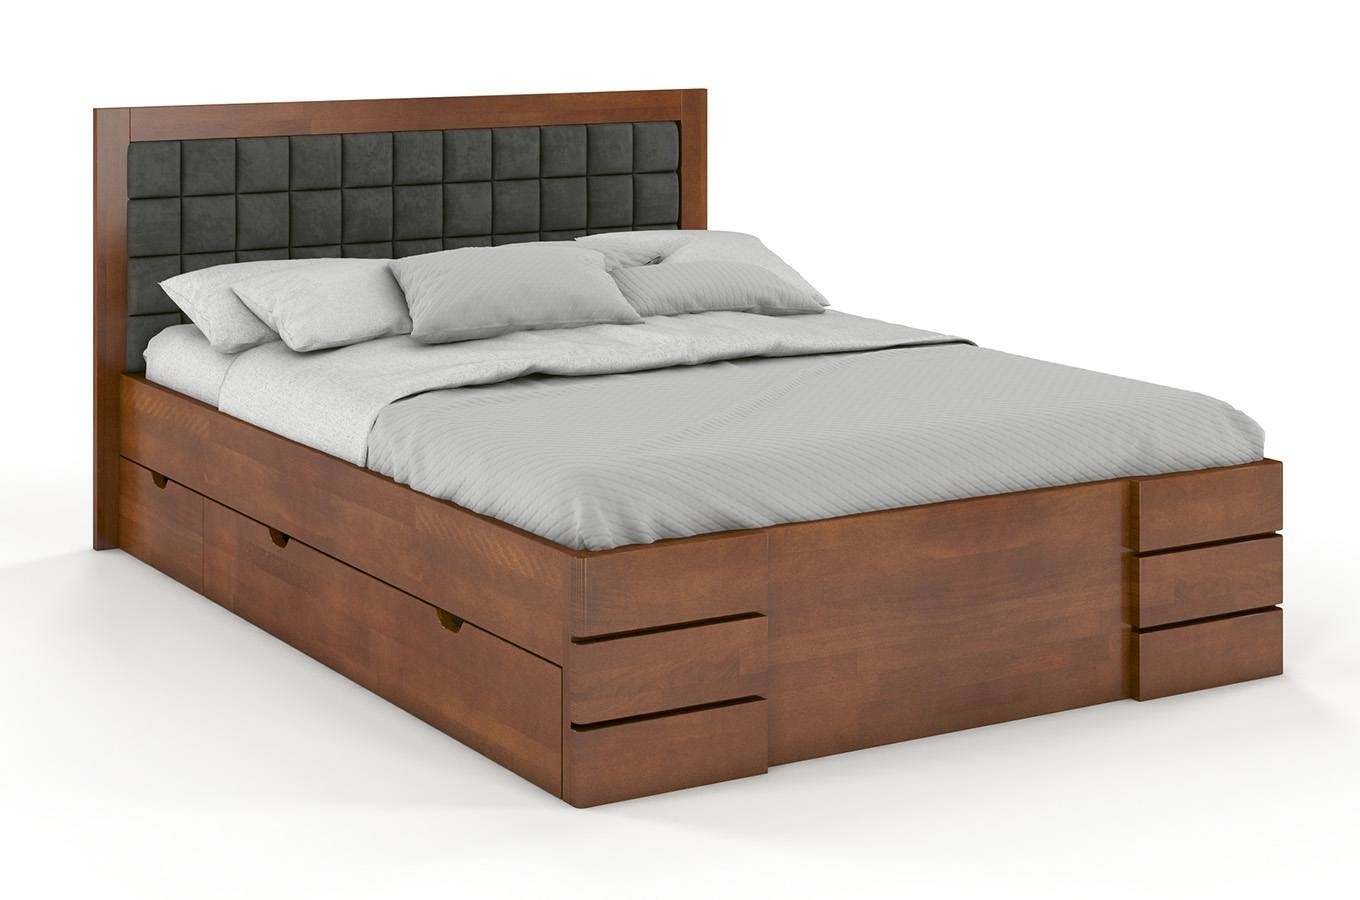 Buková postel Gotland High čalounění a zásuvky - ořech 120 x 200 cm, Casablanca 2315